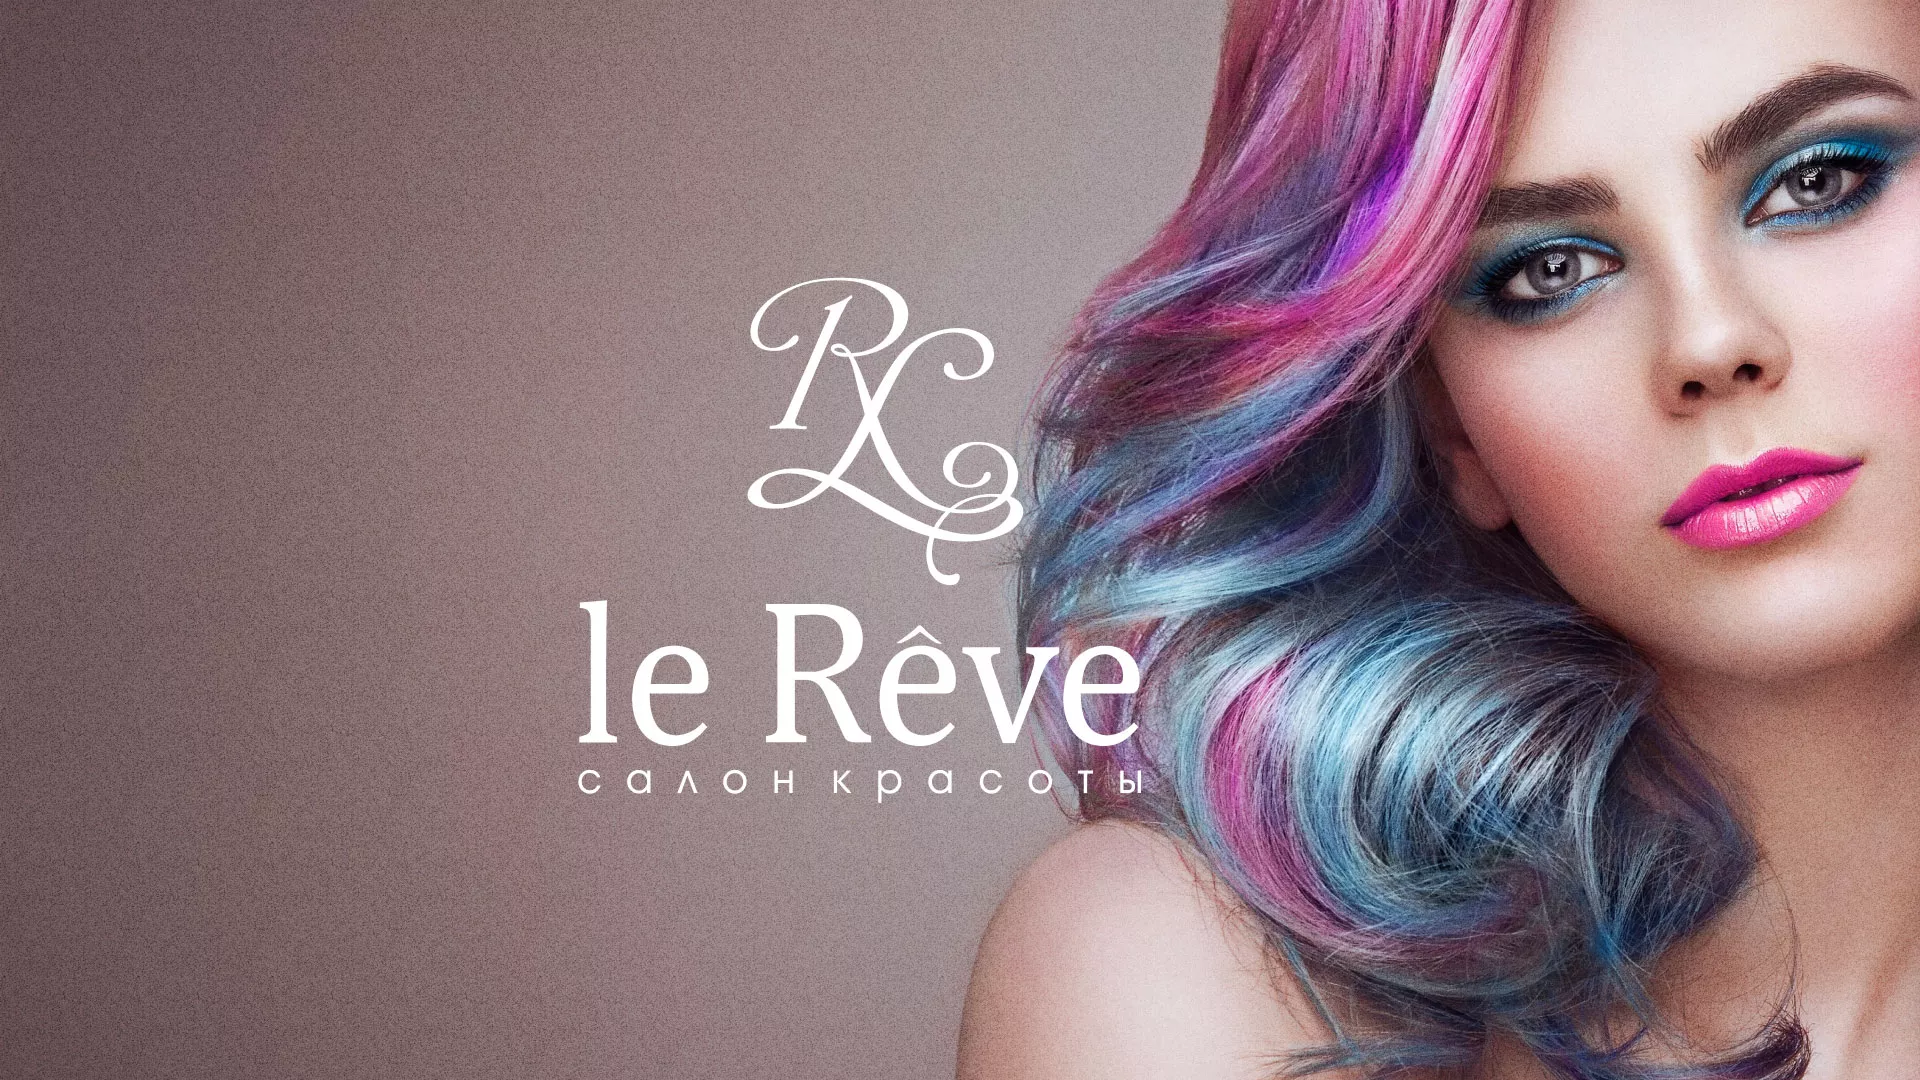 Создание сайта для салона красоты «Le Reve» в Старице